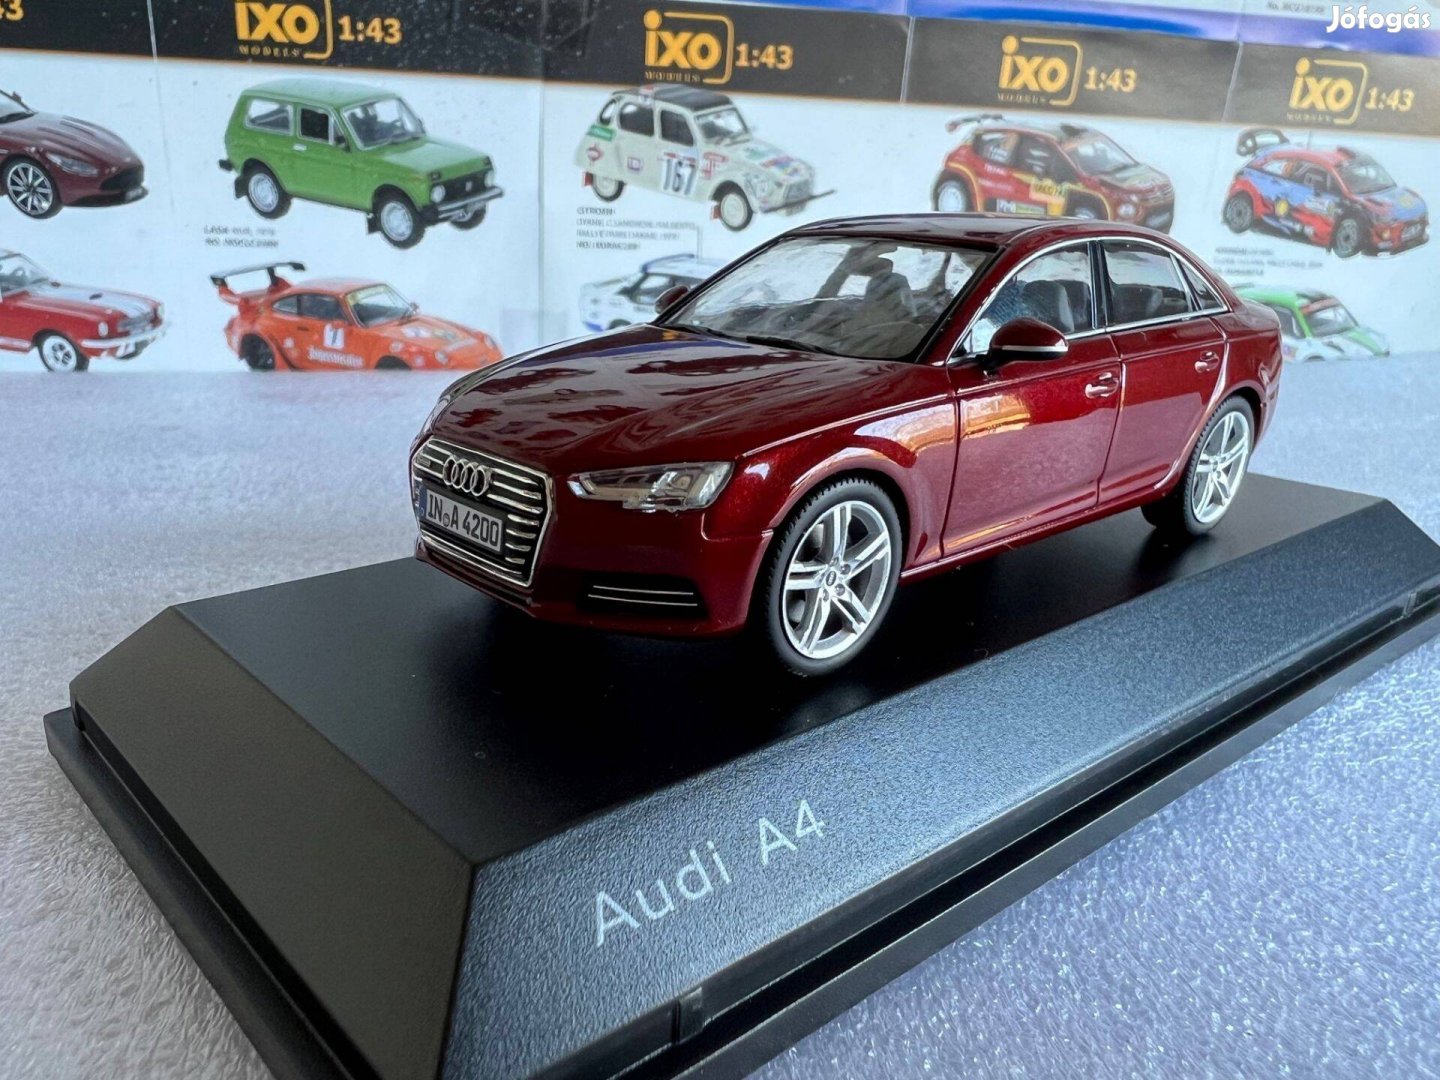 Audi A4 1:43-as méretarányú autómodell